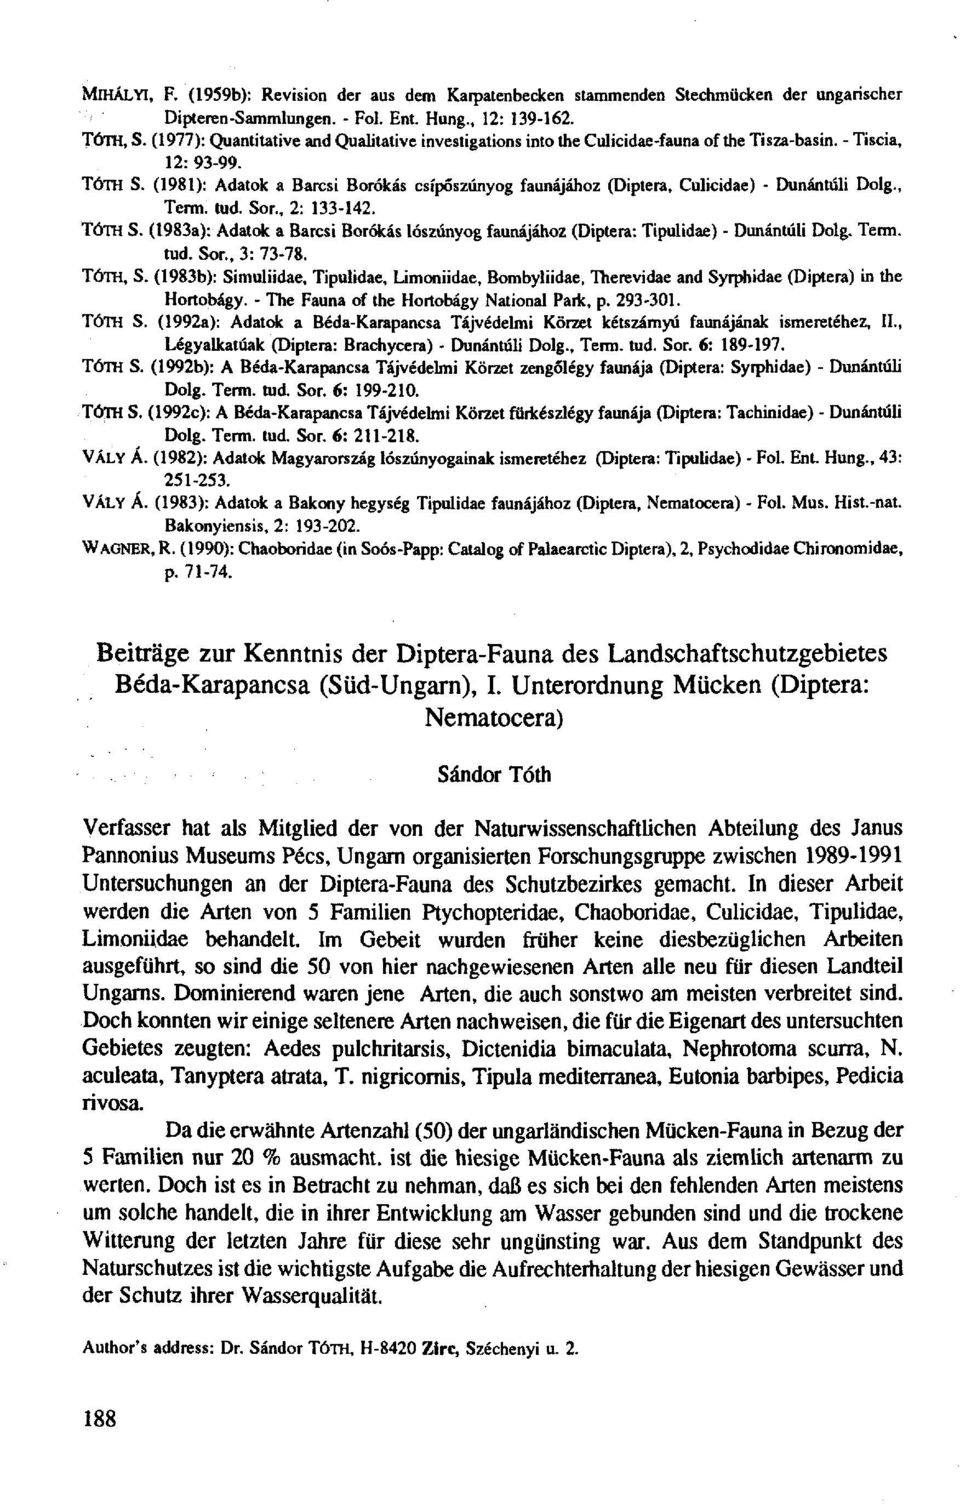 (1981): Adatok a Barcsi Borókás csípőszúnyog faunájához (Diptera, Culicidae) - Dunántúli Dolg., Term. tud. Sor., 2: 133-142. TÓTH S.